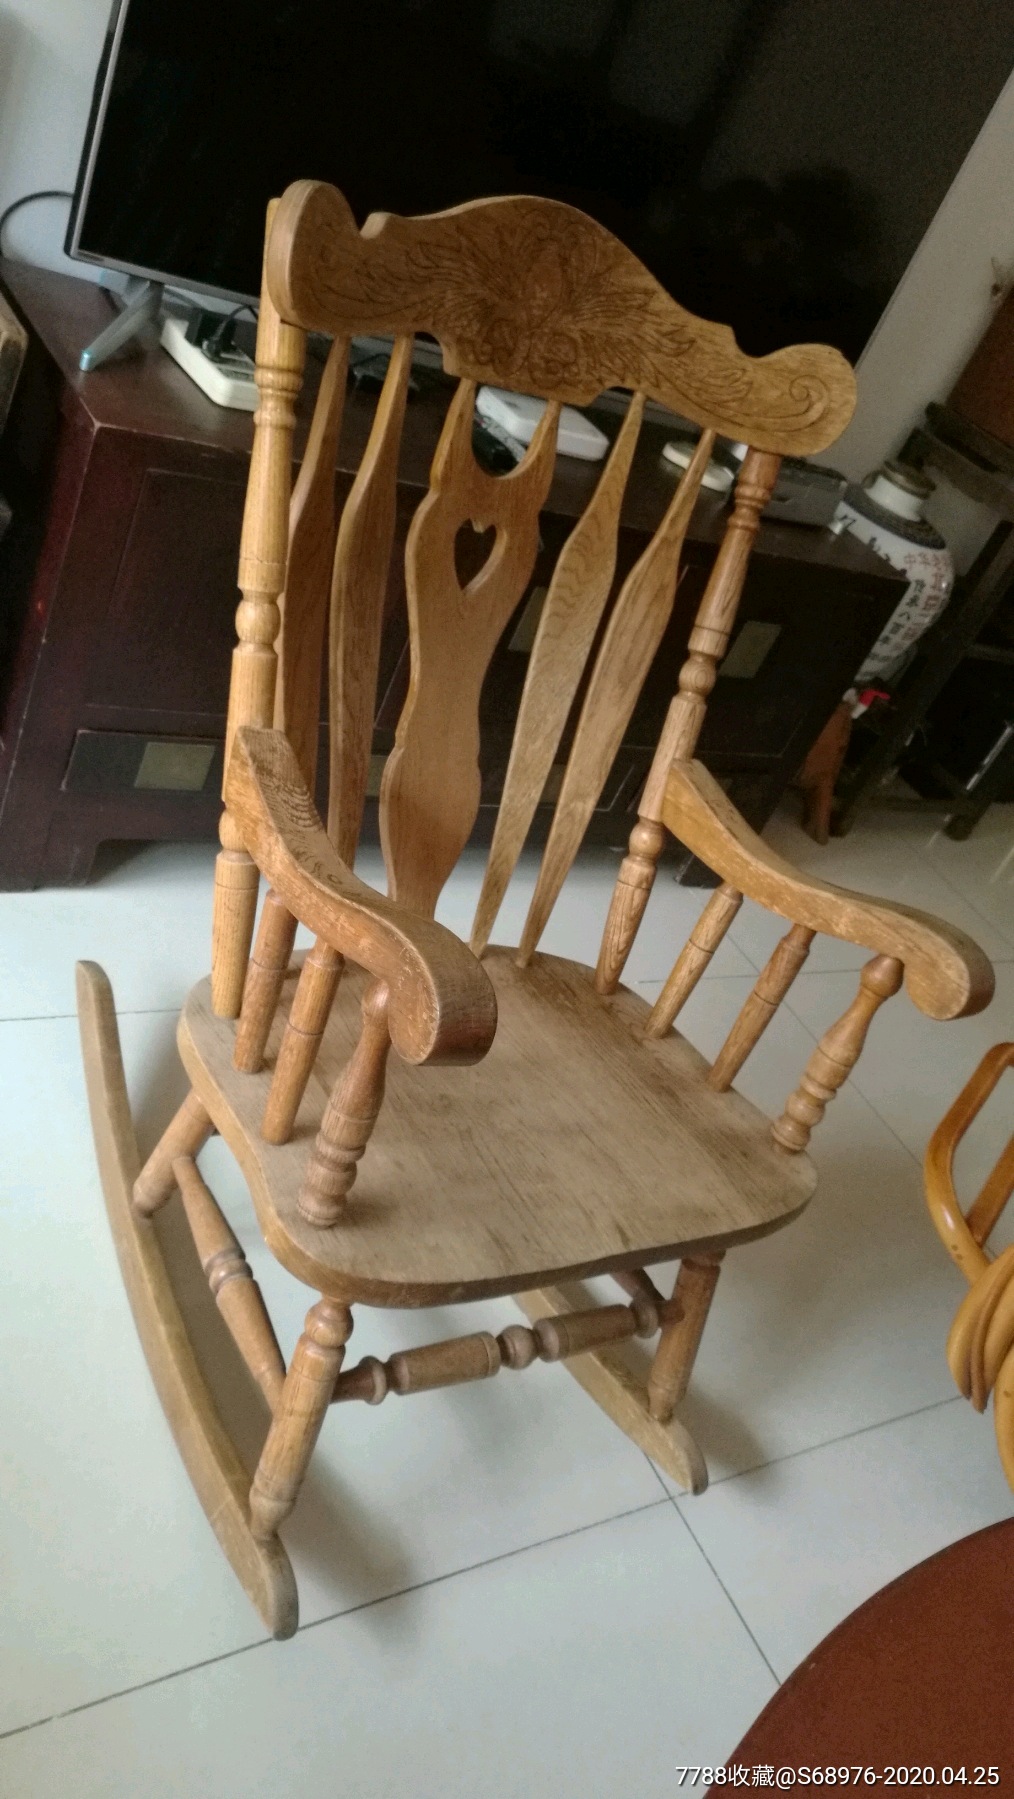 木制摇摇椅,造型漂亮,坐着舒适,结实耐用,可用可藏